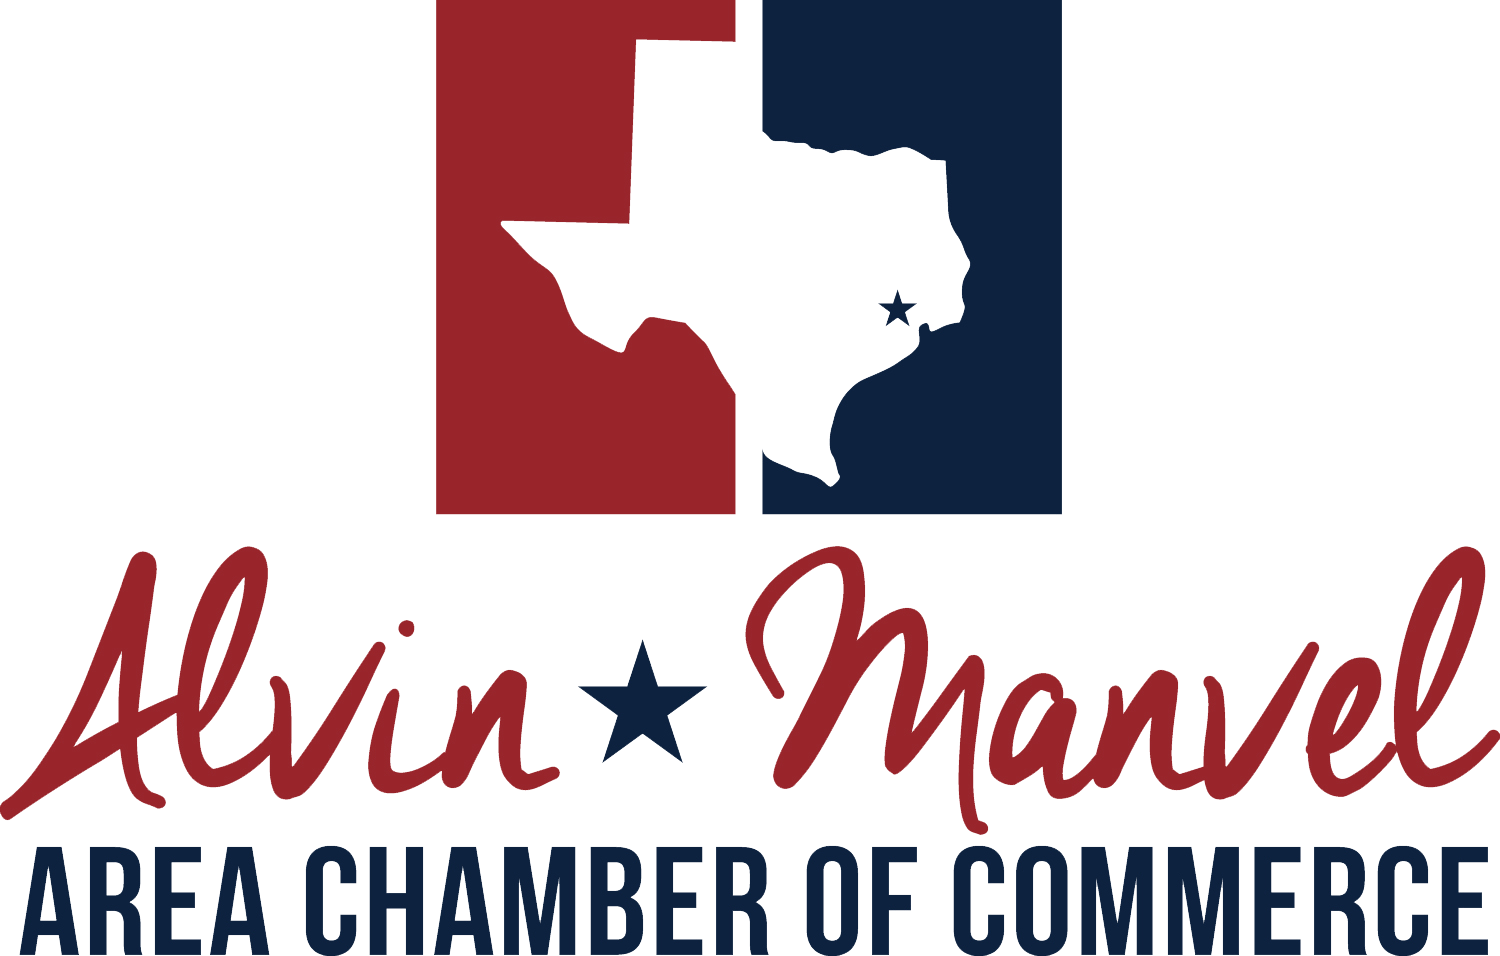 alvin manvel area chamber of commerce